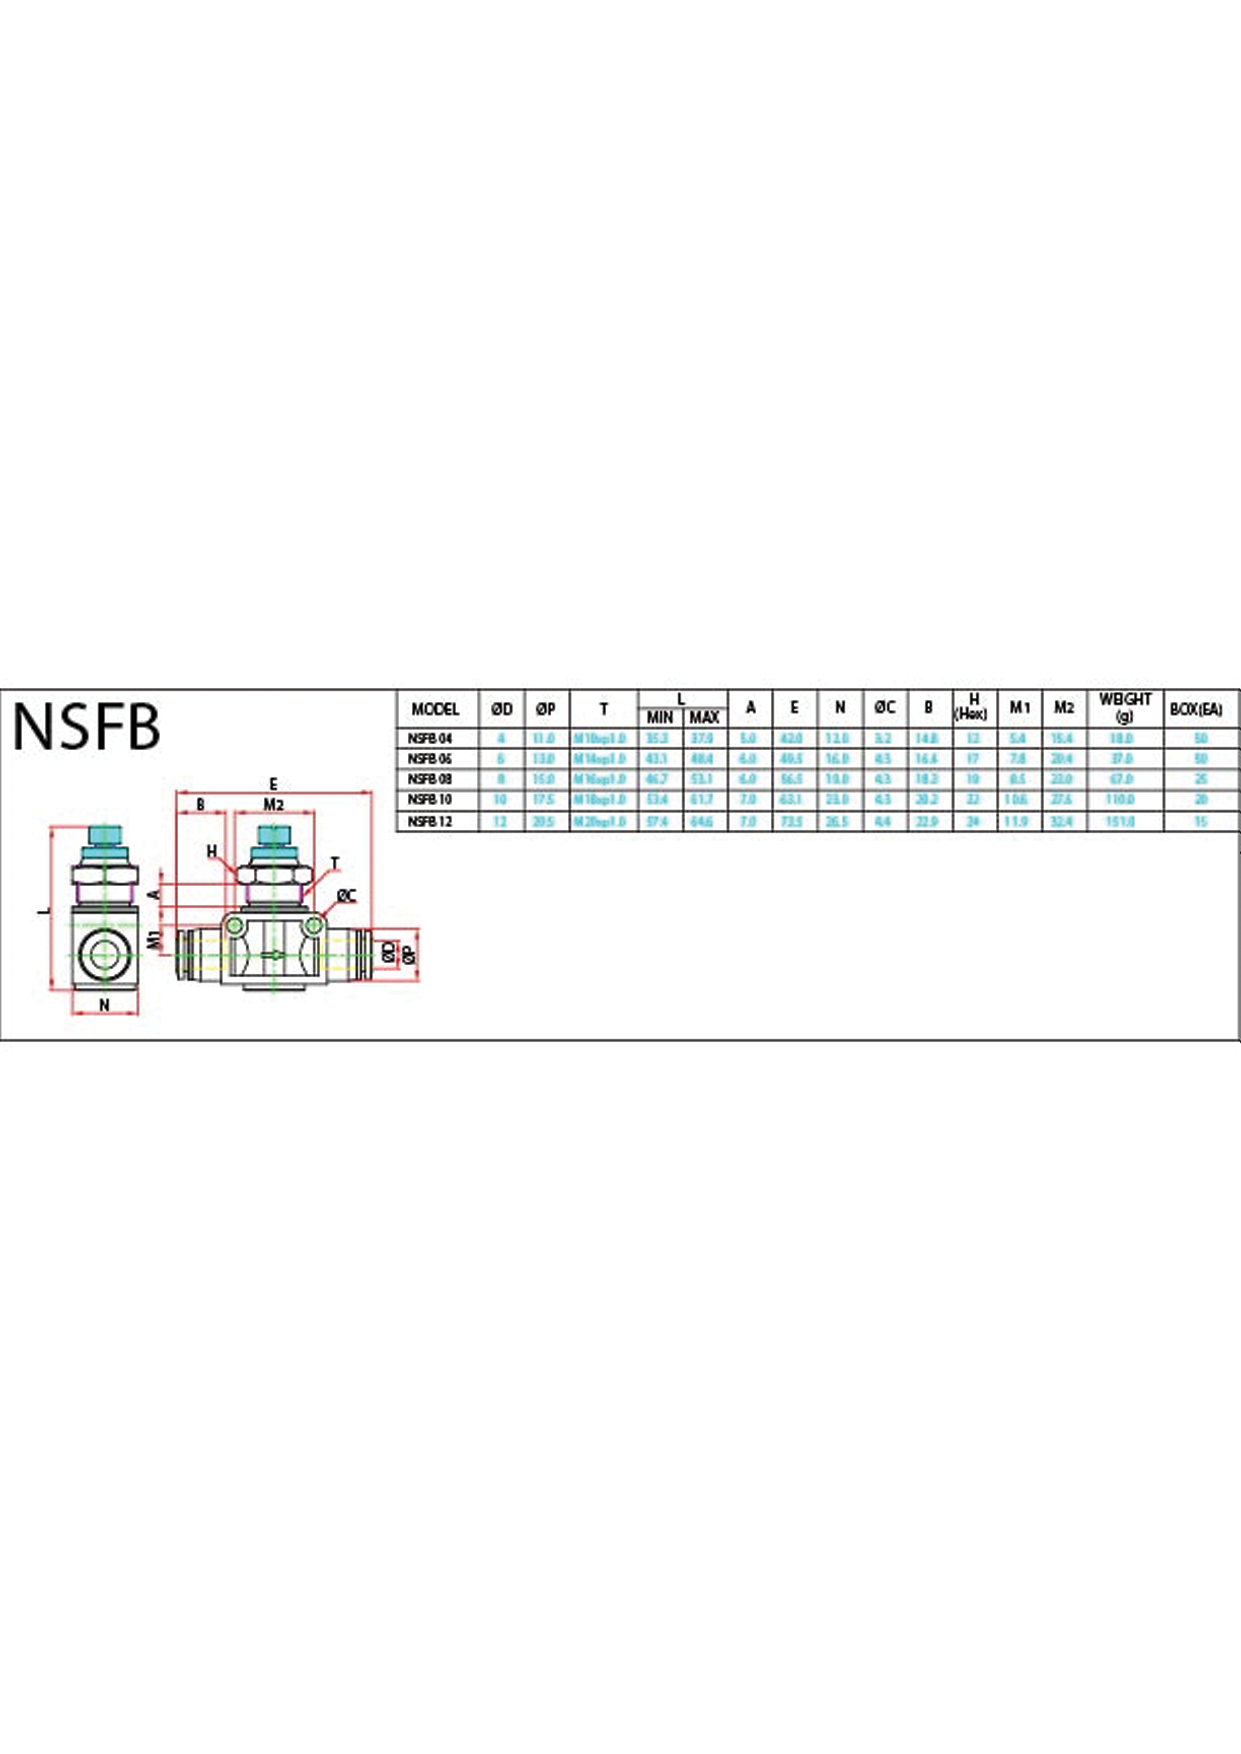 NSFB Data Sheet ( 116 KB )